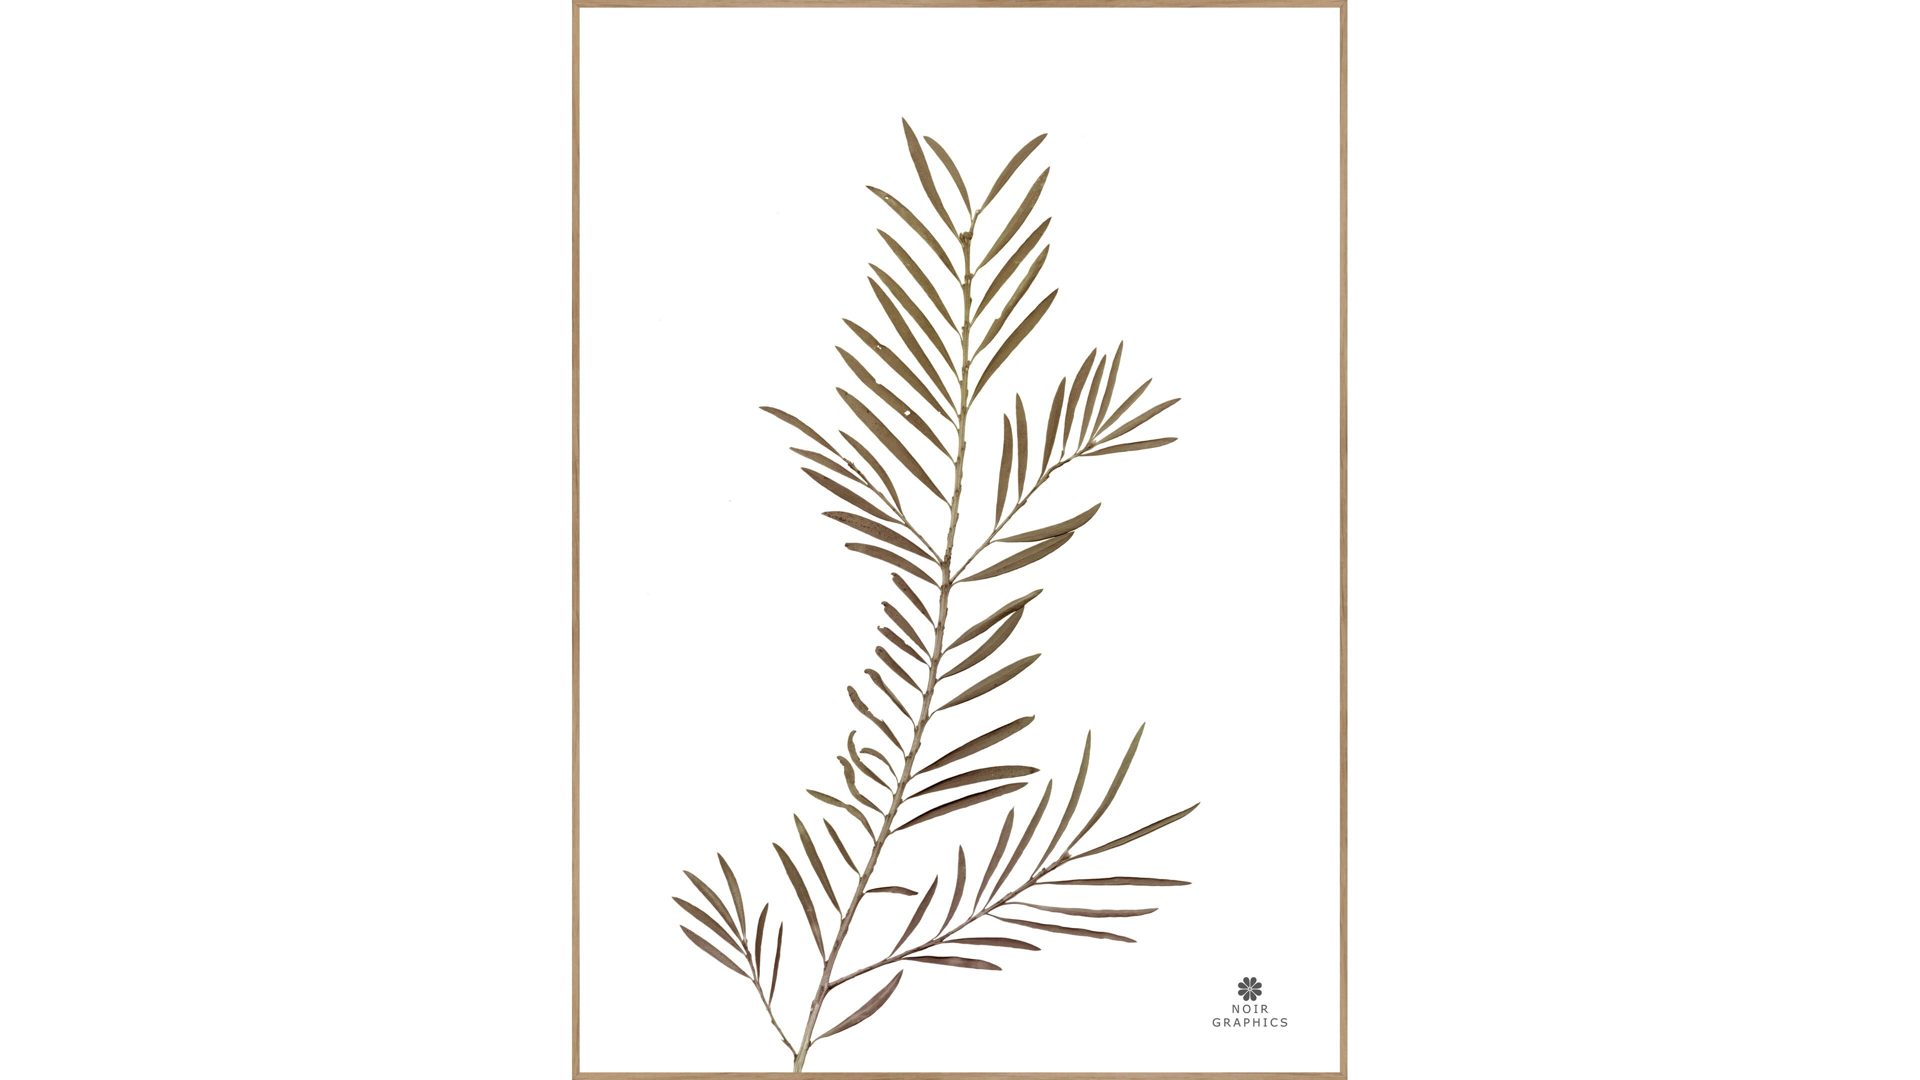 Kunstdruck Malerifabrikken aus Karton / Papier / Pappe in Braun Posterboard Grace 2 mit Rahmen Motiv Pflanzenblatt & Eichenholzrahmen – ca. 30 x 40 cm